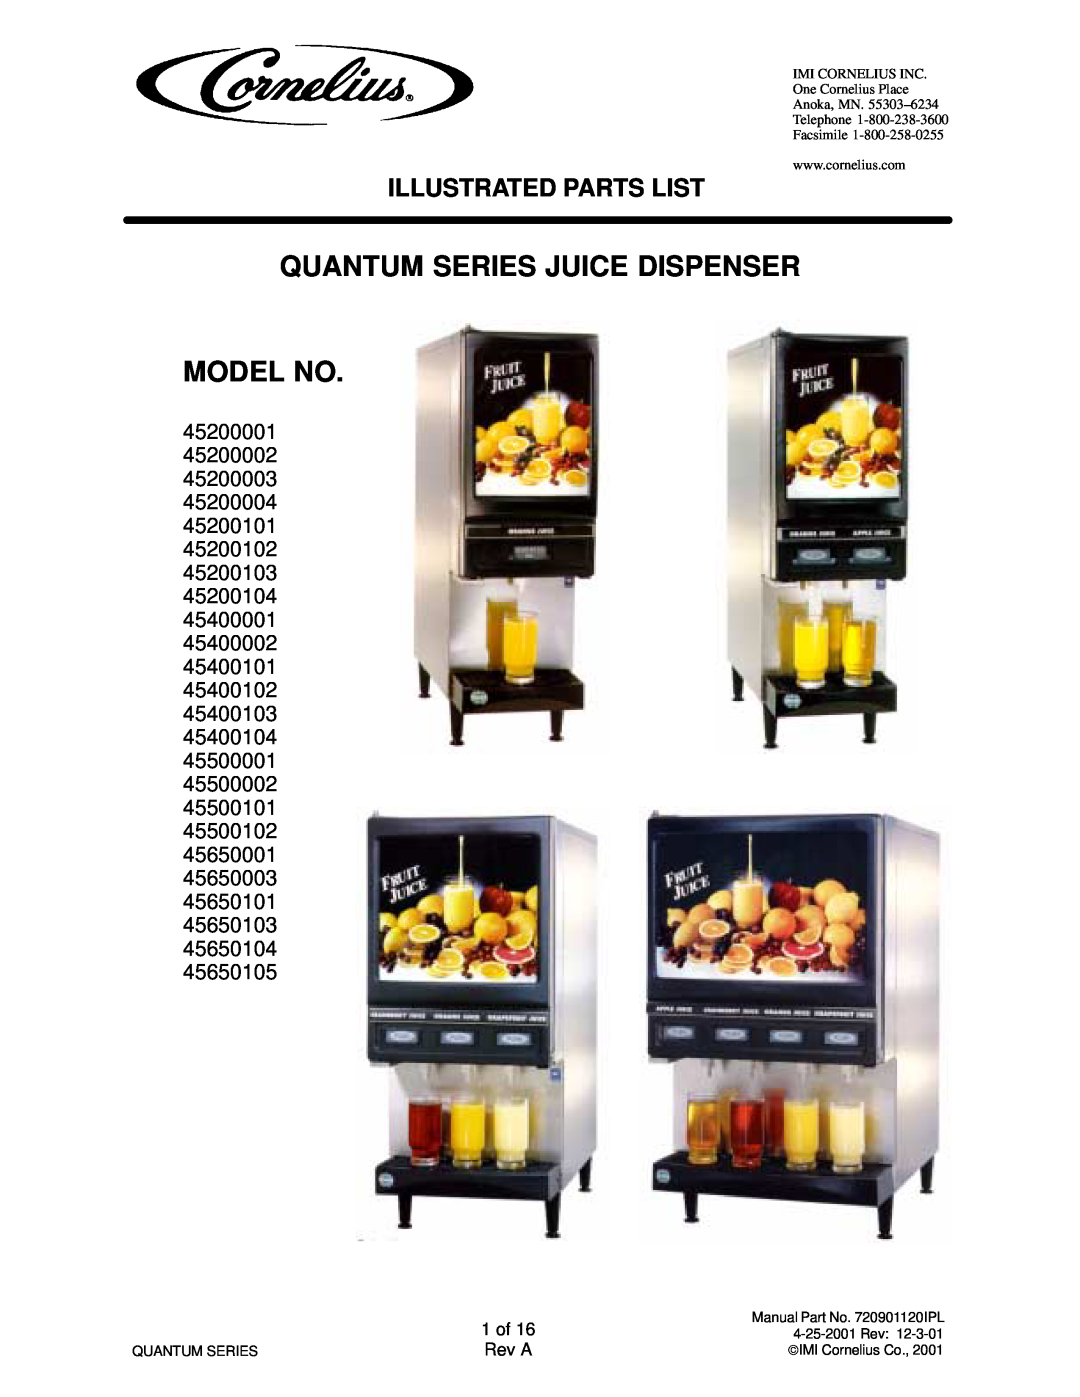 Cornelius QUANTUM SERIES service manual Quantum Series Juice Dispenser Model No, Illustrated Parts List 